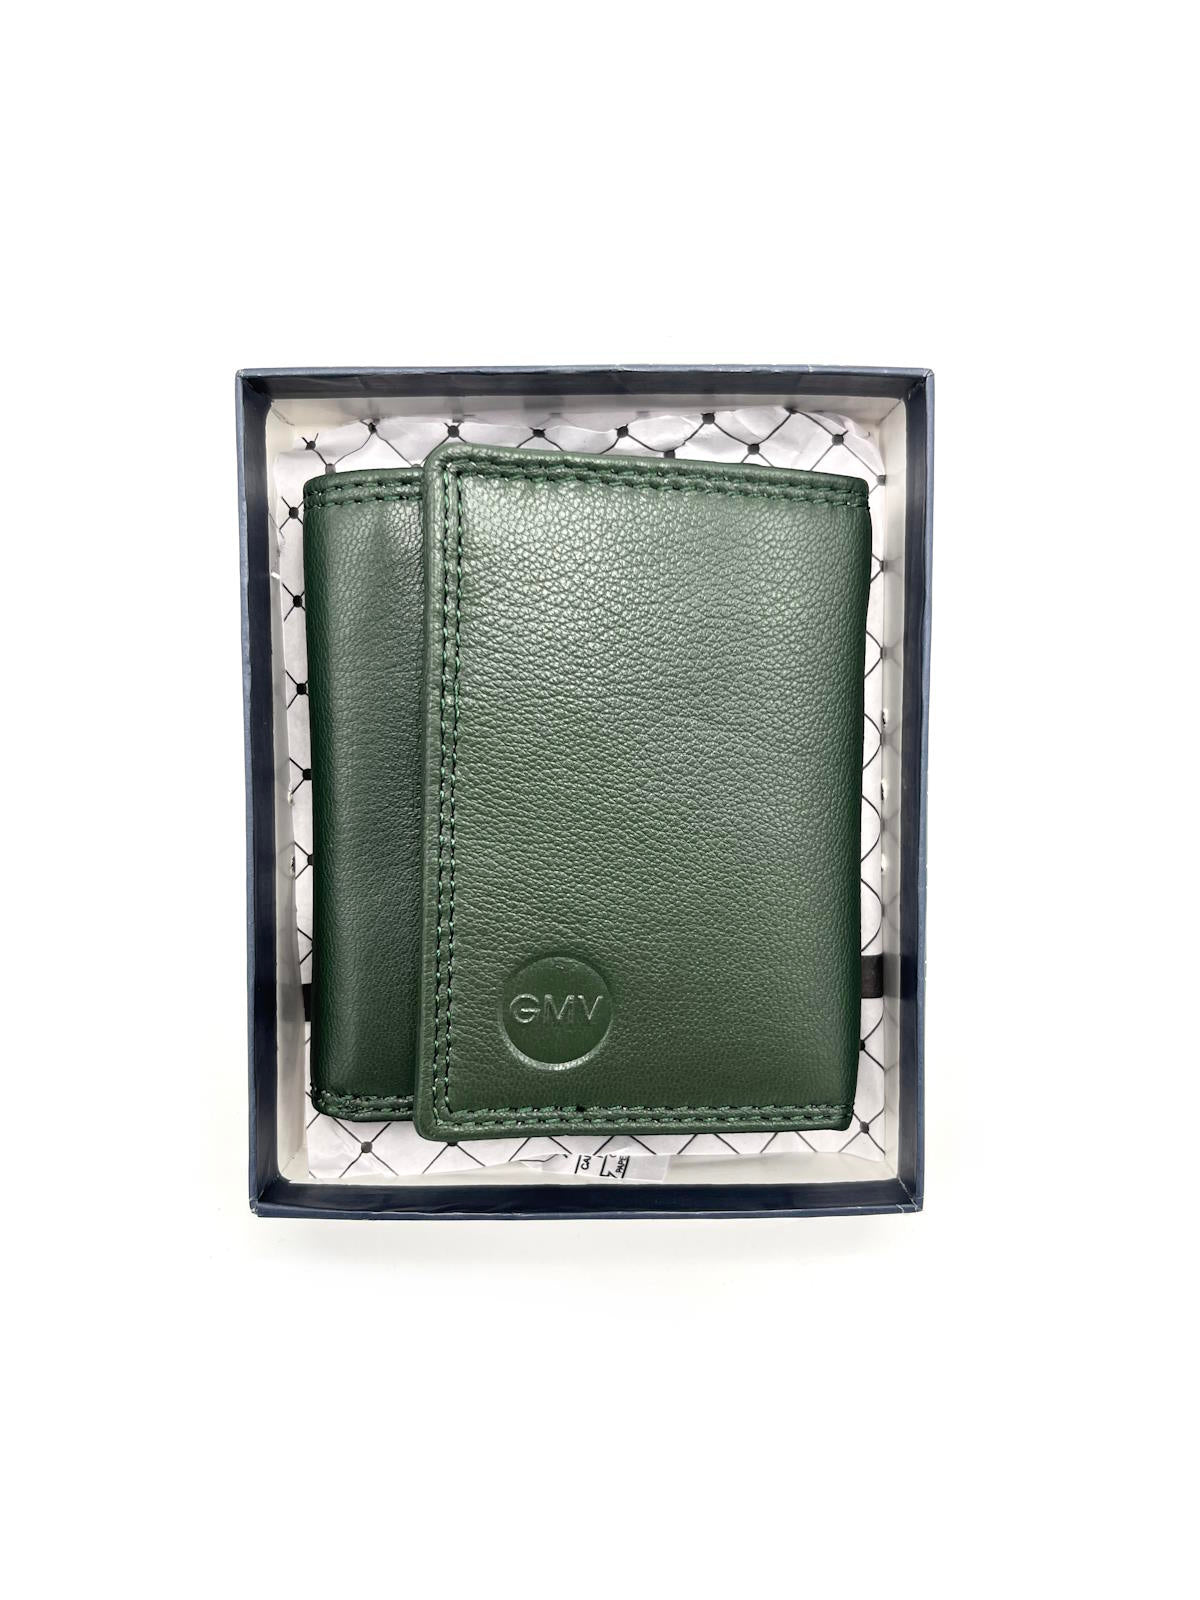 Genuine leather wallet, Brand GMV, art. GMV80-53